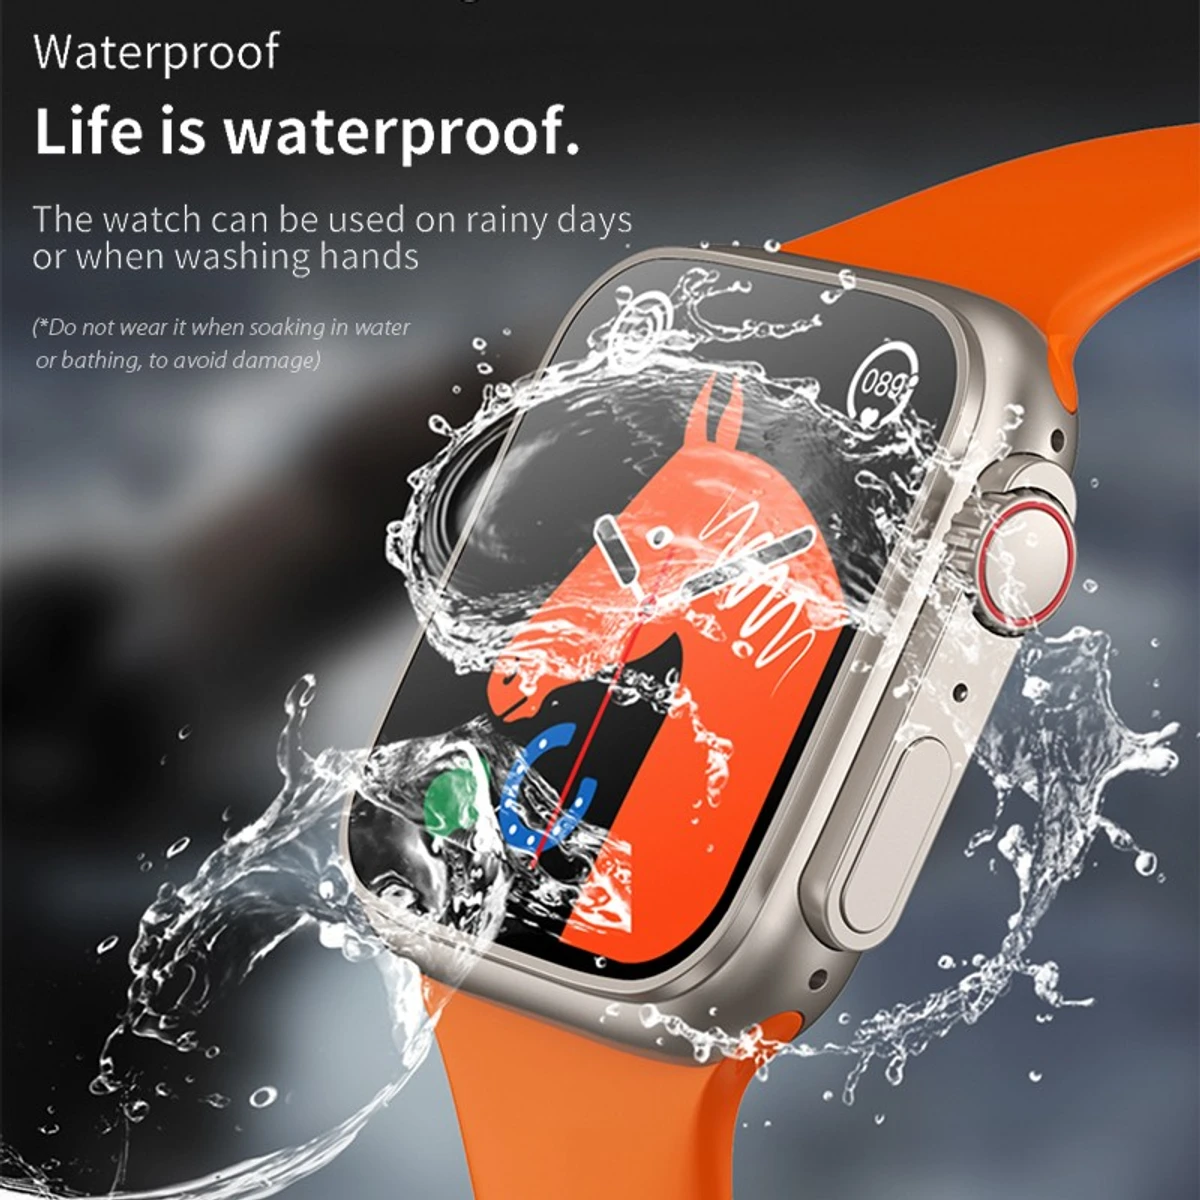 T900 Ultra Men Smart Watch 2.09" HD